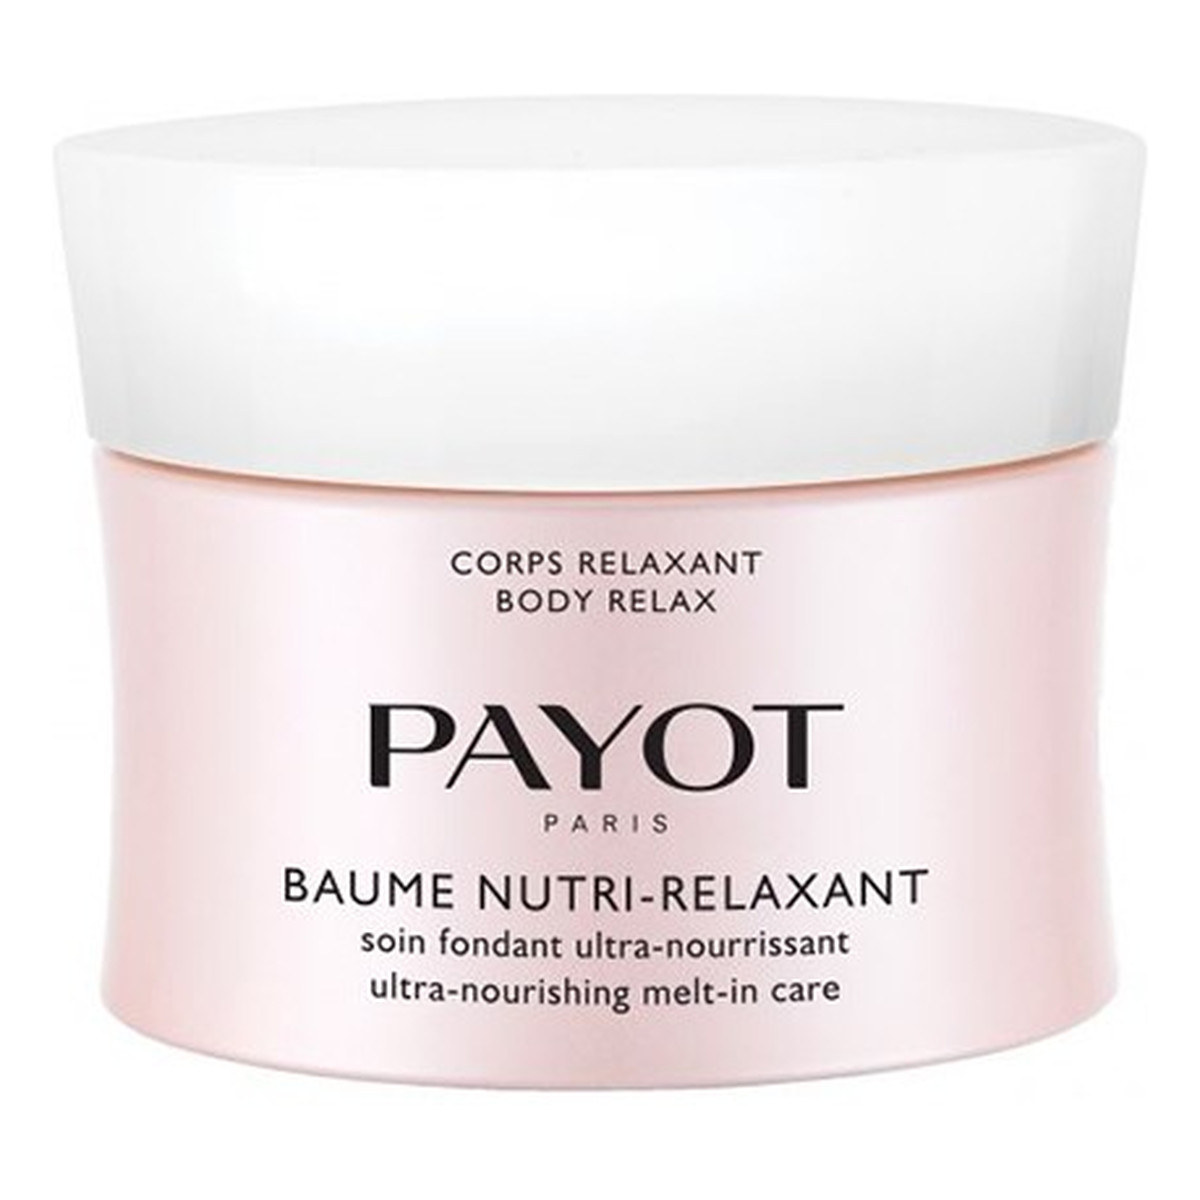 Payot Corps relaxant Baume Nutri-Relaxant odżywcze masło do ciała 200ml